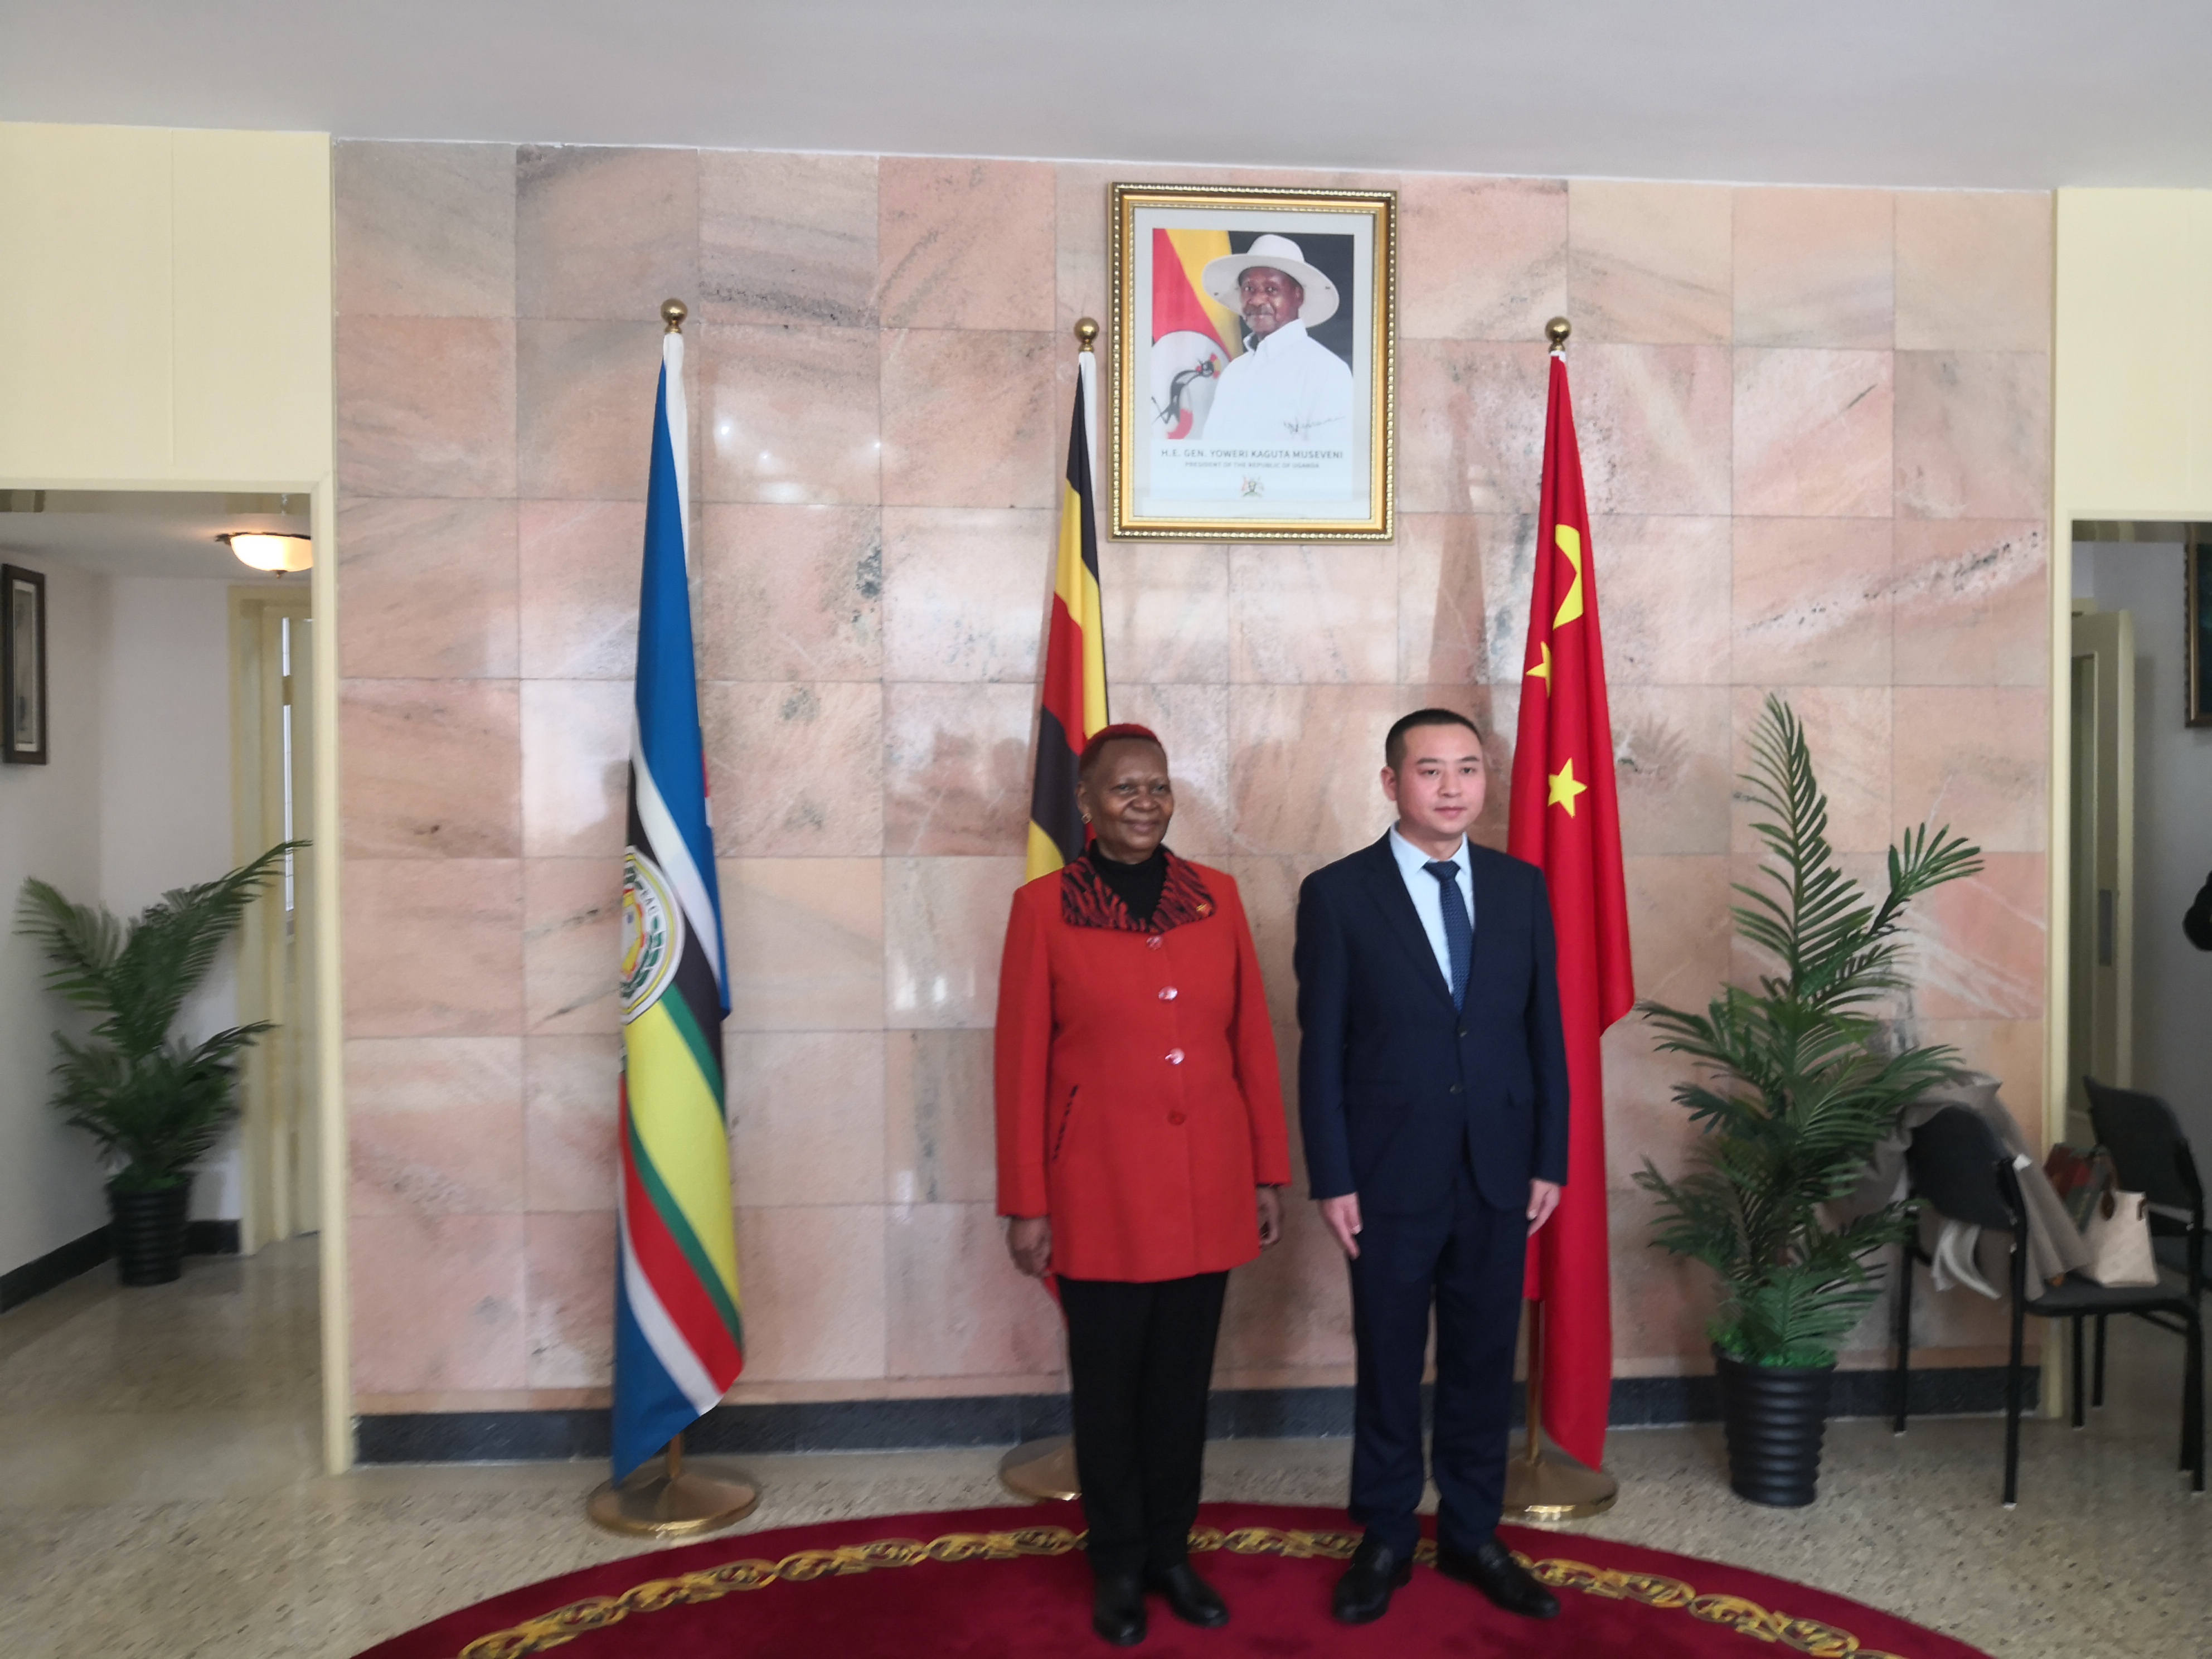 【搜狐新闻】贵州文祥和平国际贸易集团董事长拜访乌干达驻华大使